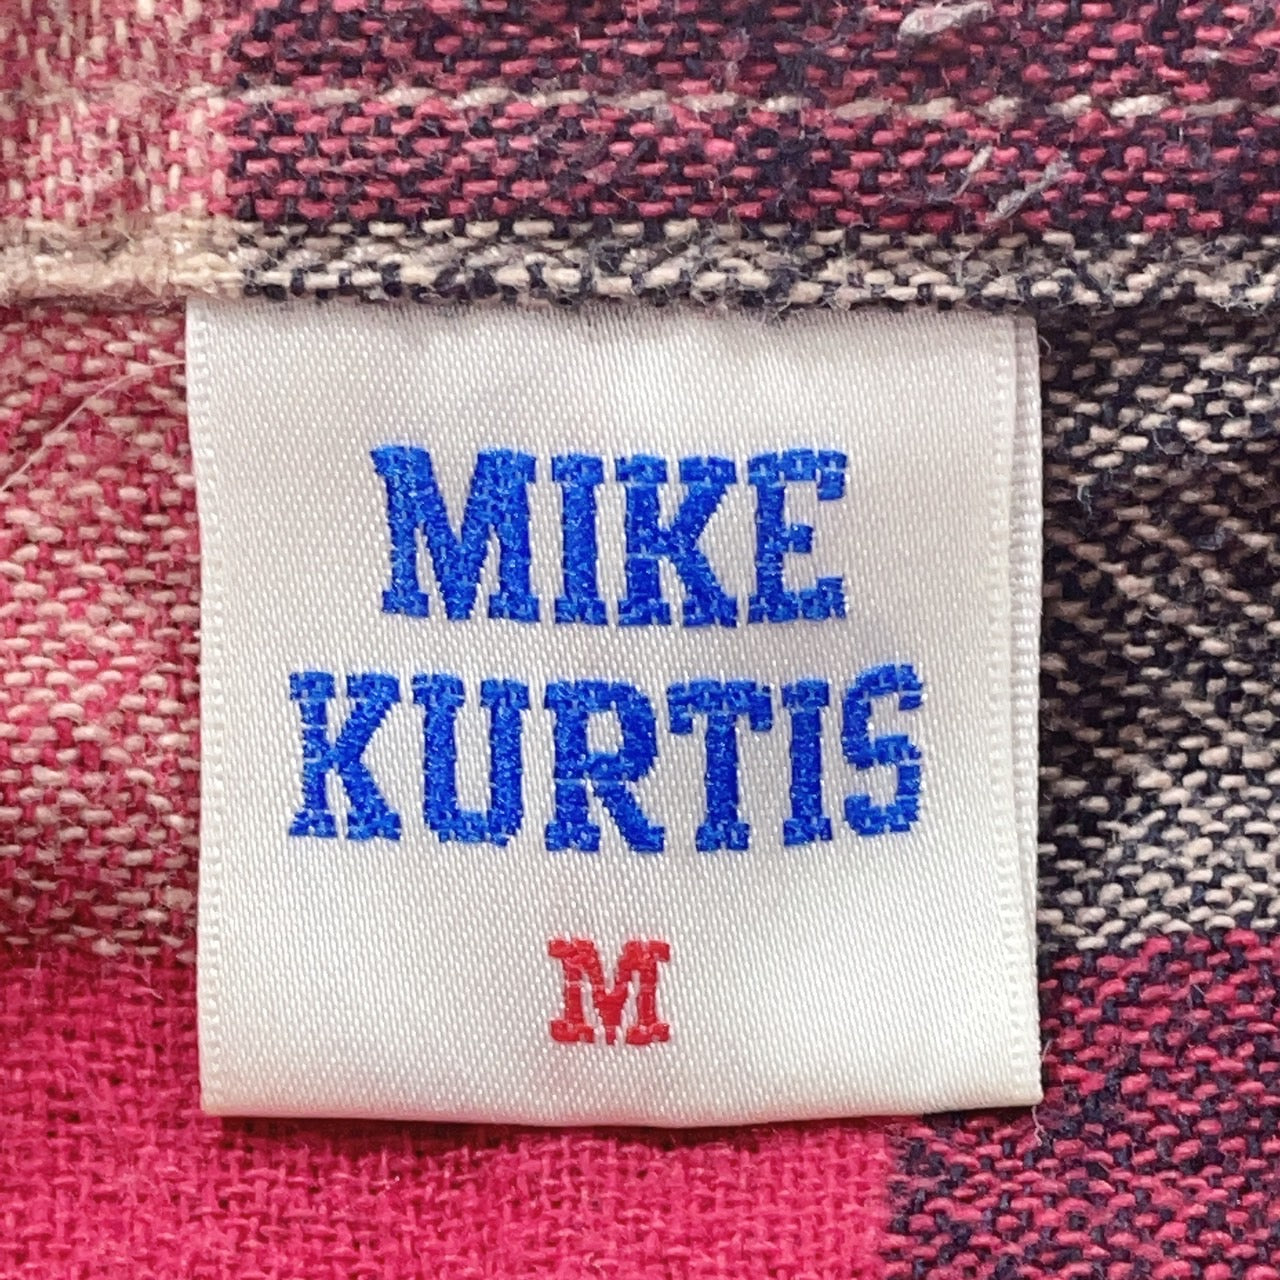 【25403】 MIKE KURTIS マイクカーティス 長袖シャツ サイズM レッド ネルシャツ カジュアルシャツ 前ボタン チェック柄 お洒落 メンズ